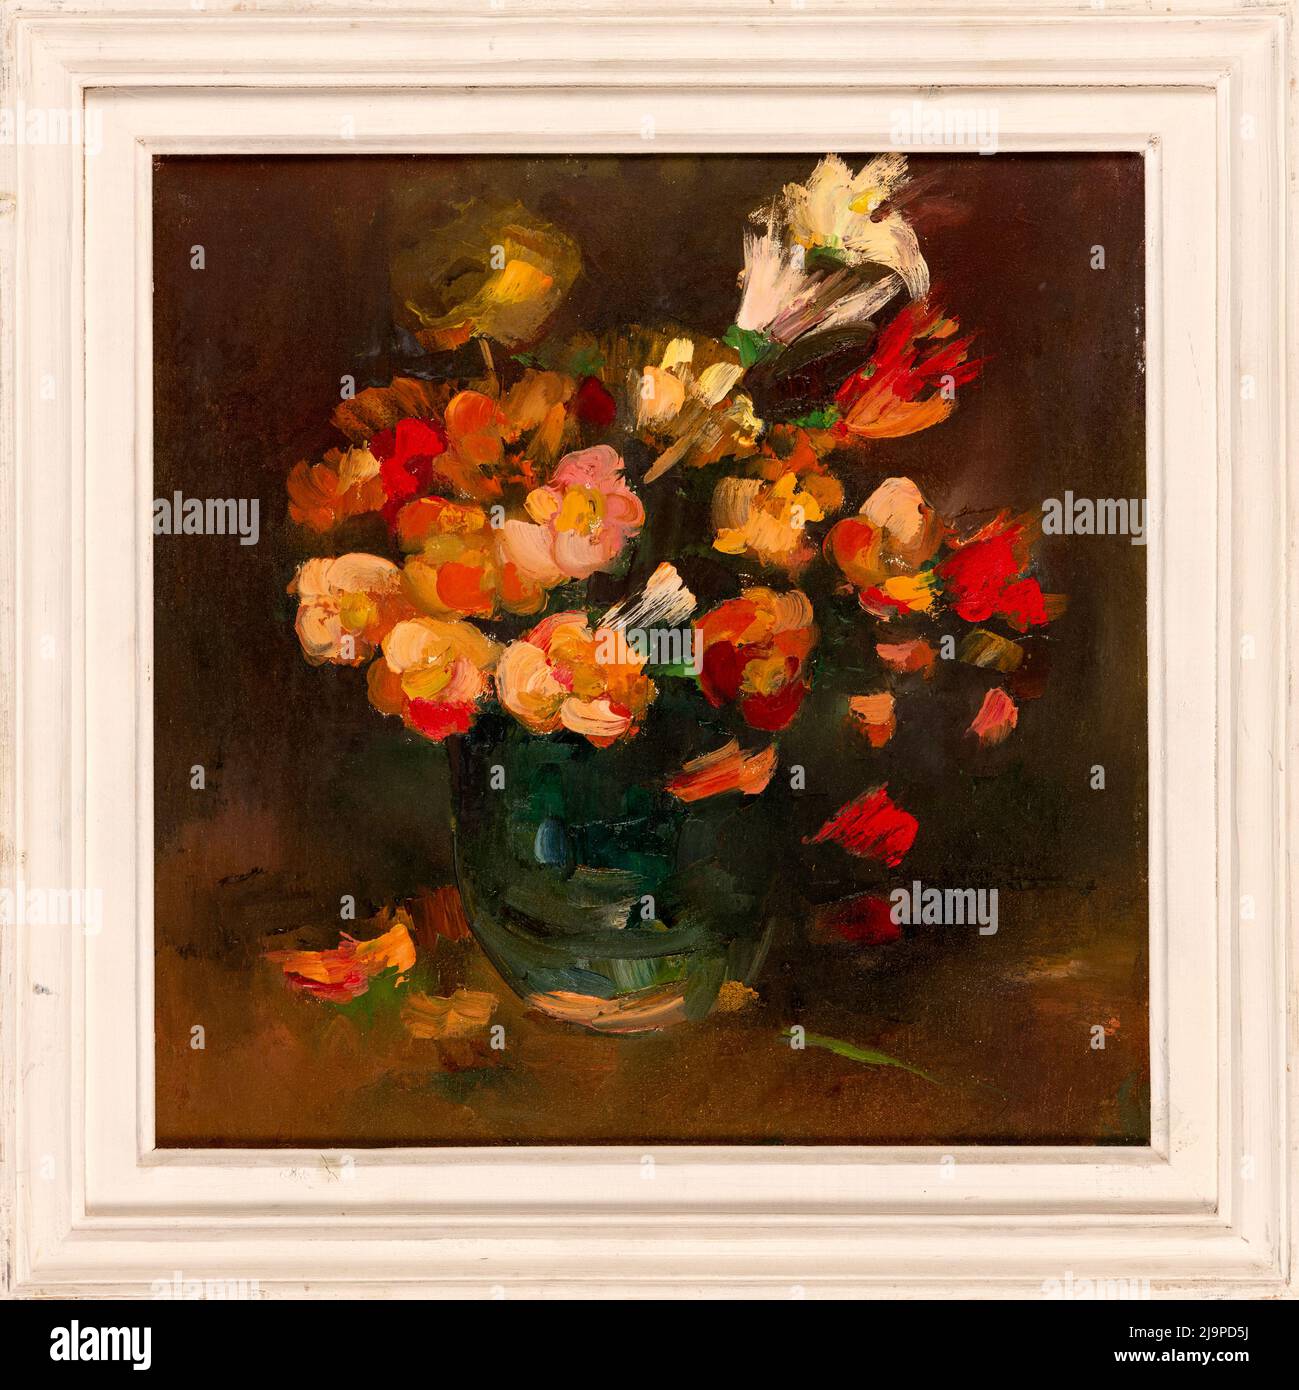 Encore la vie fait main peinture à l'huile sur toile représentant des fleurs bouquet dans un vase, style impressionniste. Banque D'Images